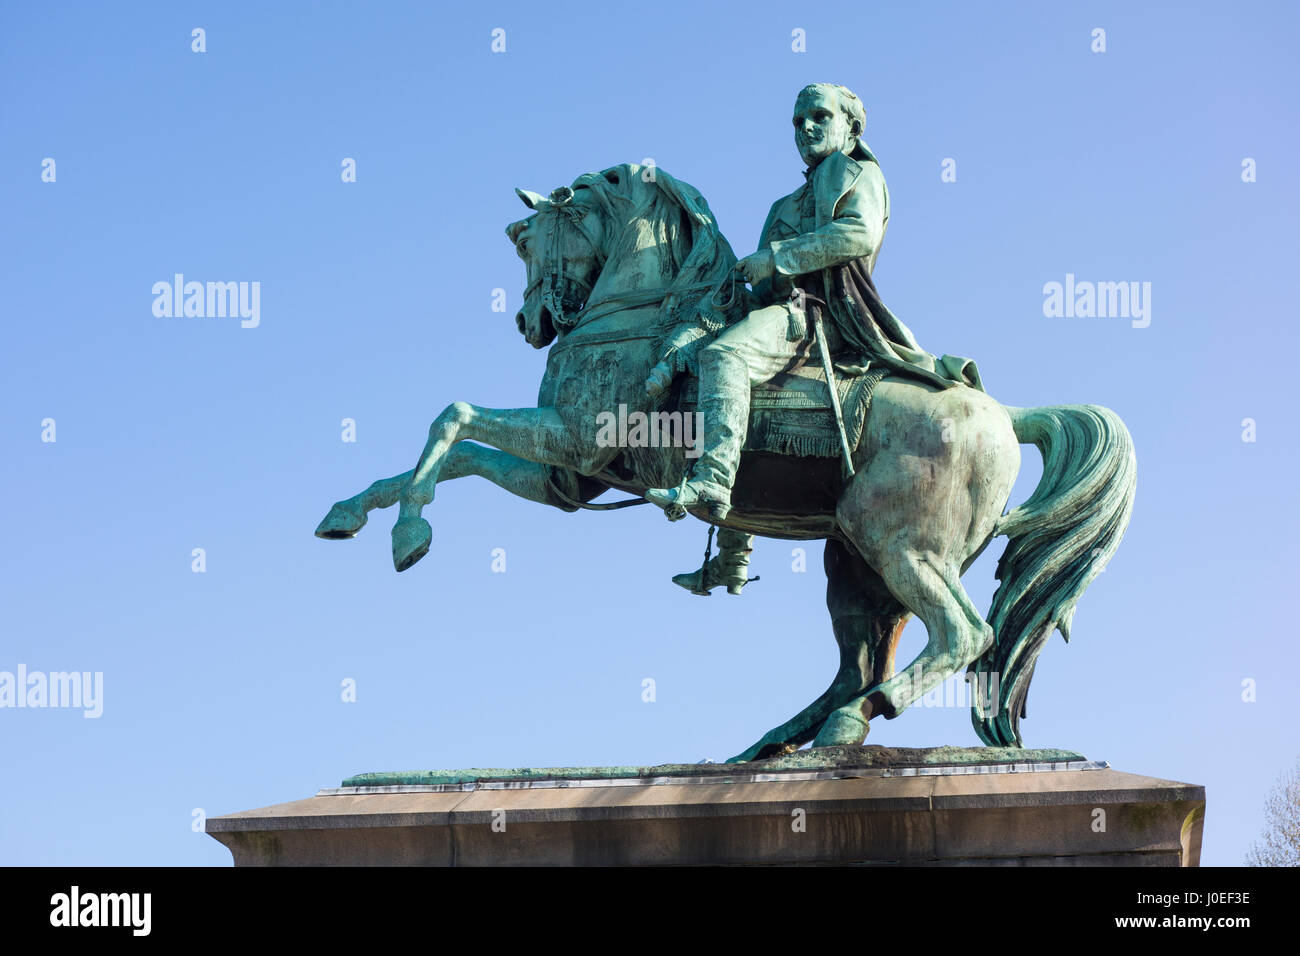 Statue of Napoleon Bonaparte at Place du Général de Gaulle, Rouen, France Stock Photo